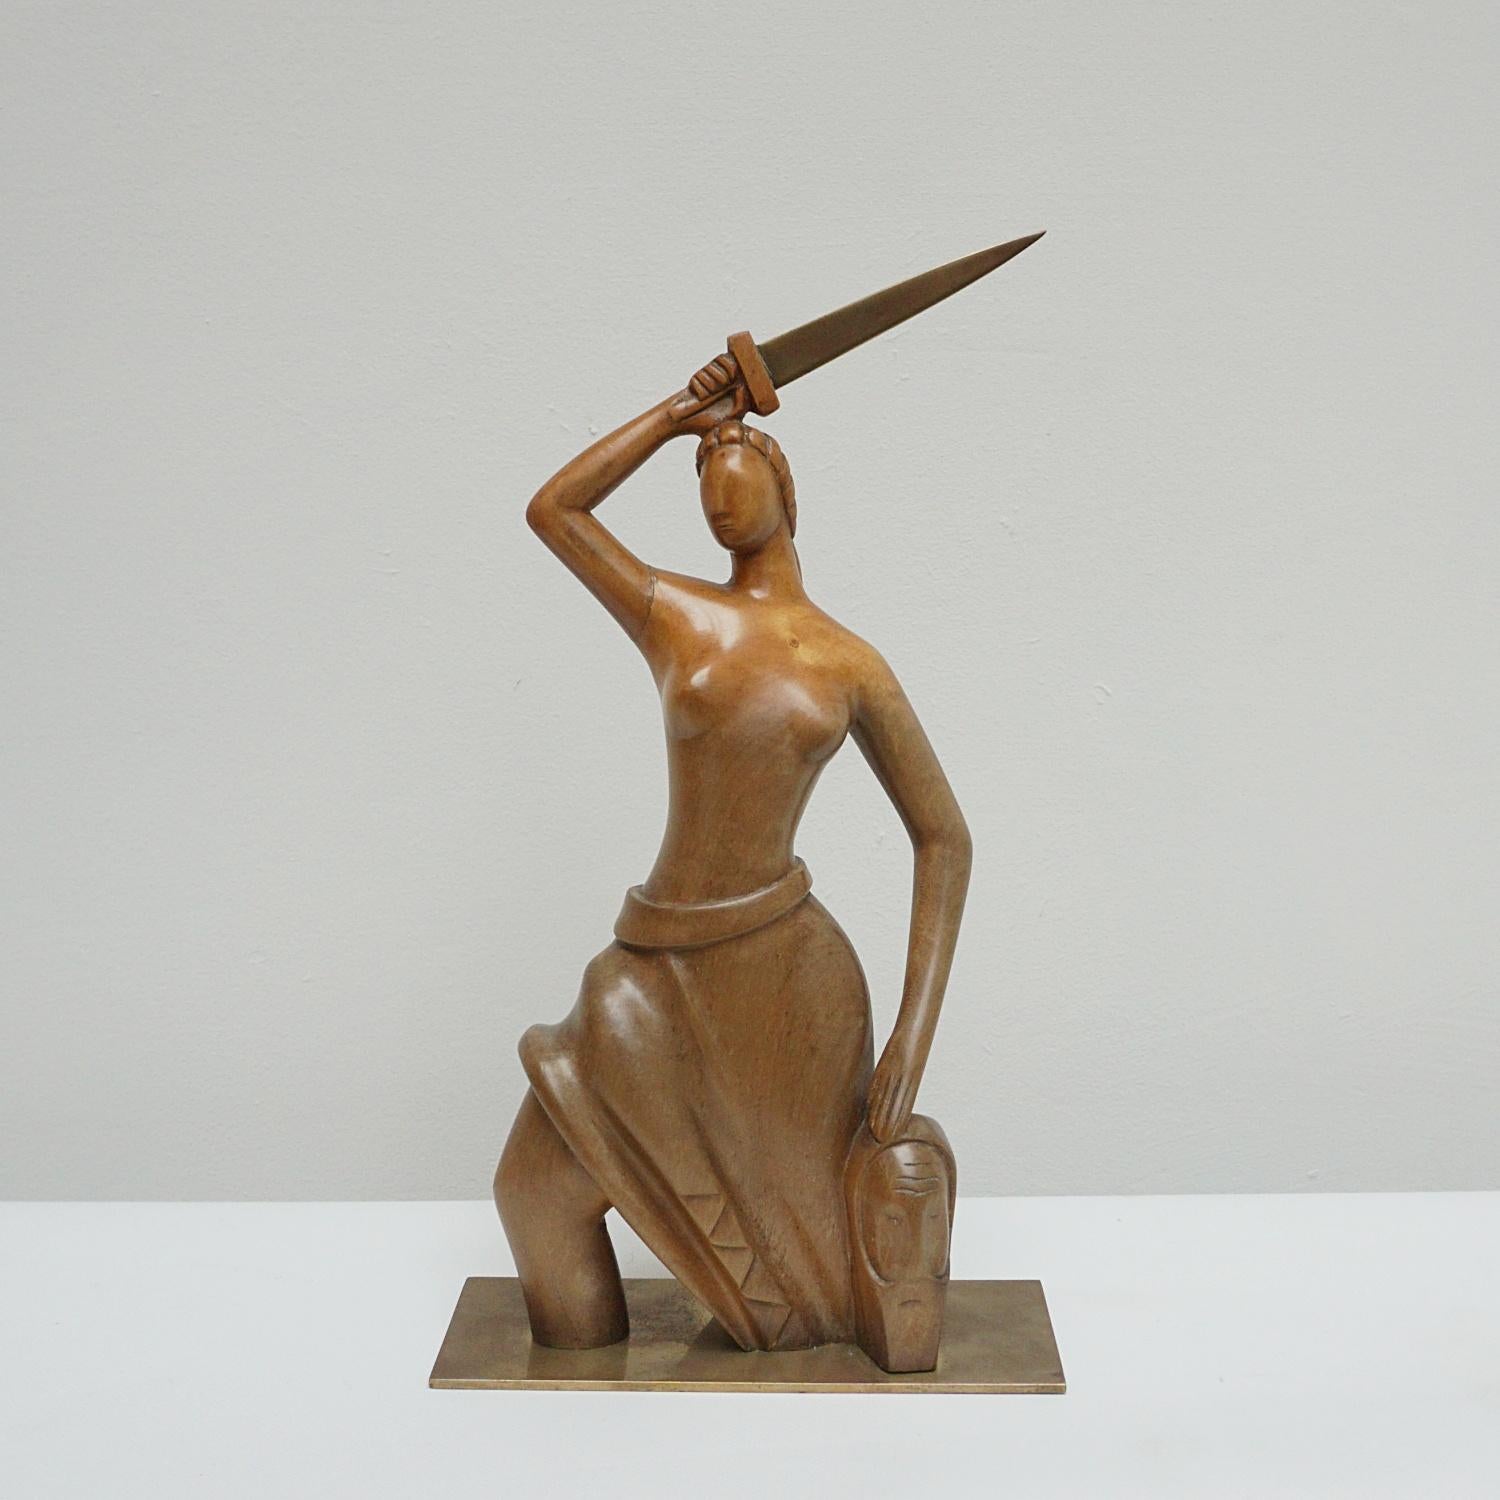 Une sculpture Art déco du designer hongrois Laszlo Hoenig (1905-1971). Étude en bois sculpté représentant un personnage stylisé semi-nu tenant une épée en bronze et un masque tribal. Le noyer très poli est posé sur une base en bronze. Estampillé